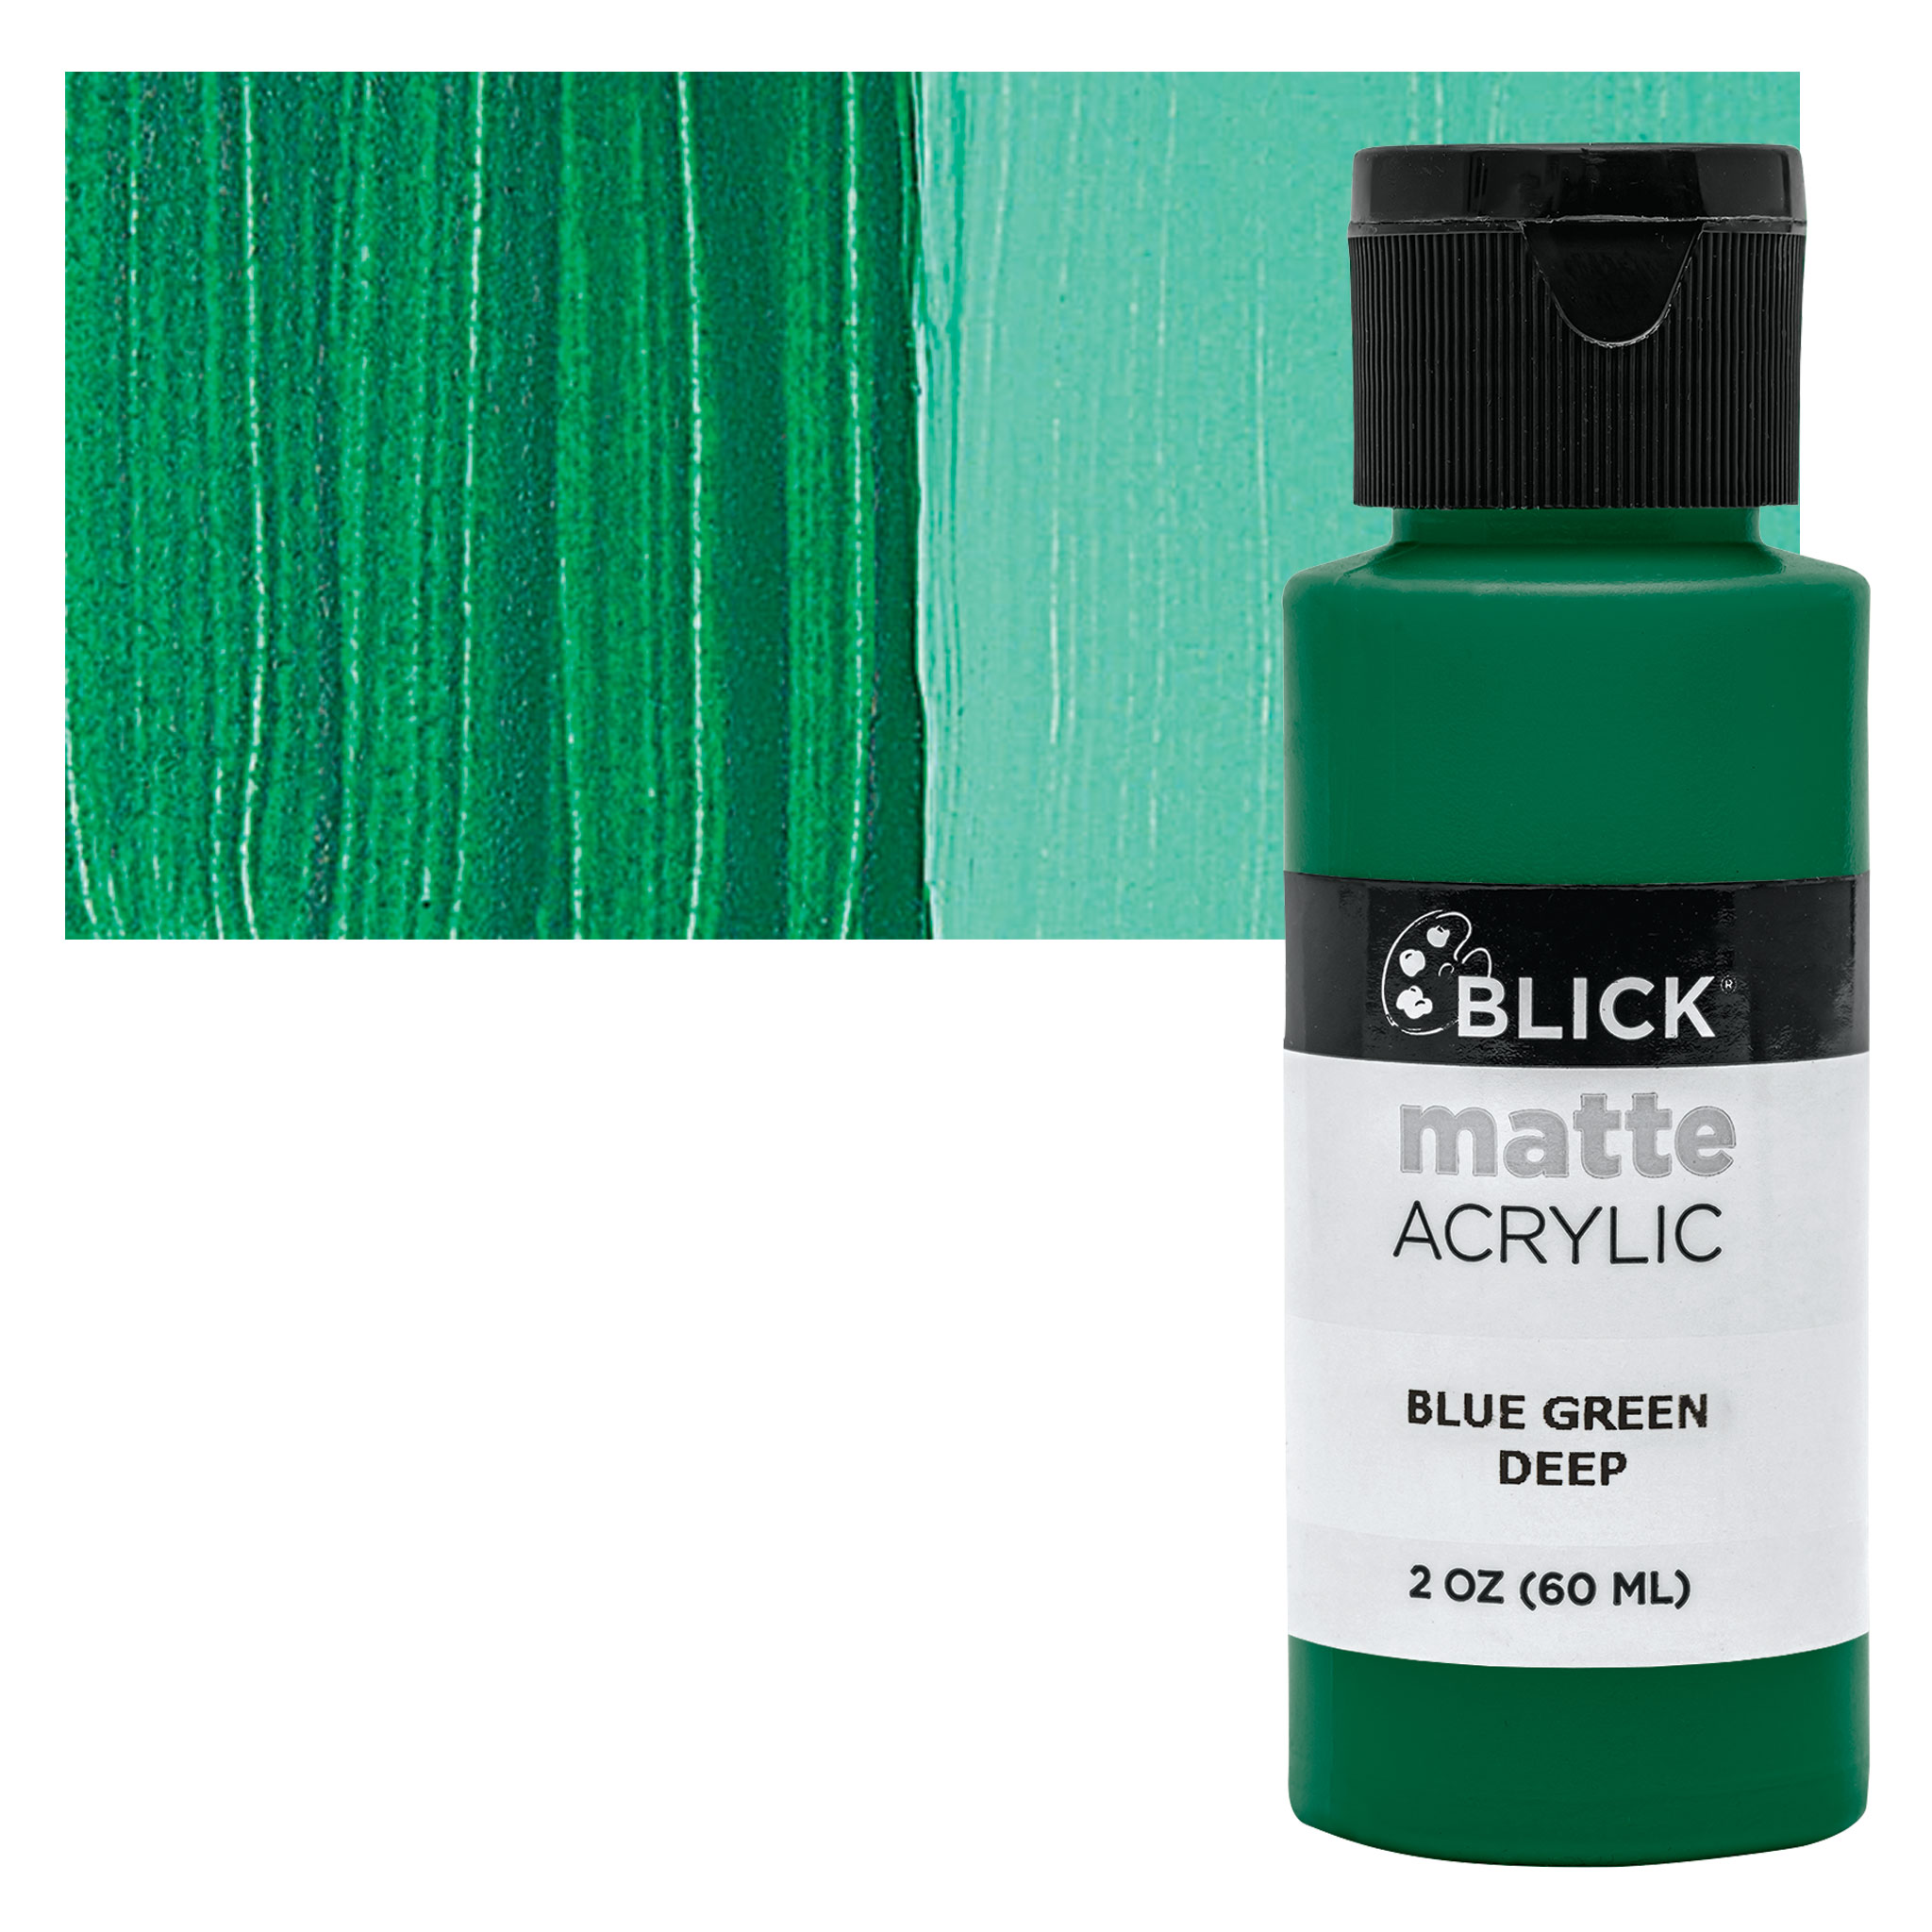 Blick Matte Acrylic - Blue Green Deep, 2 oz bottle